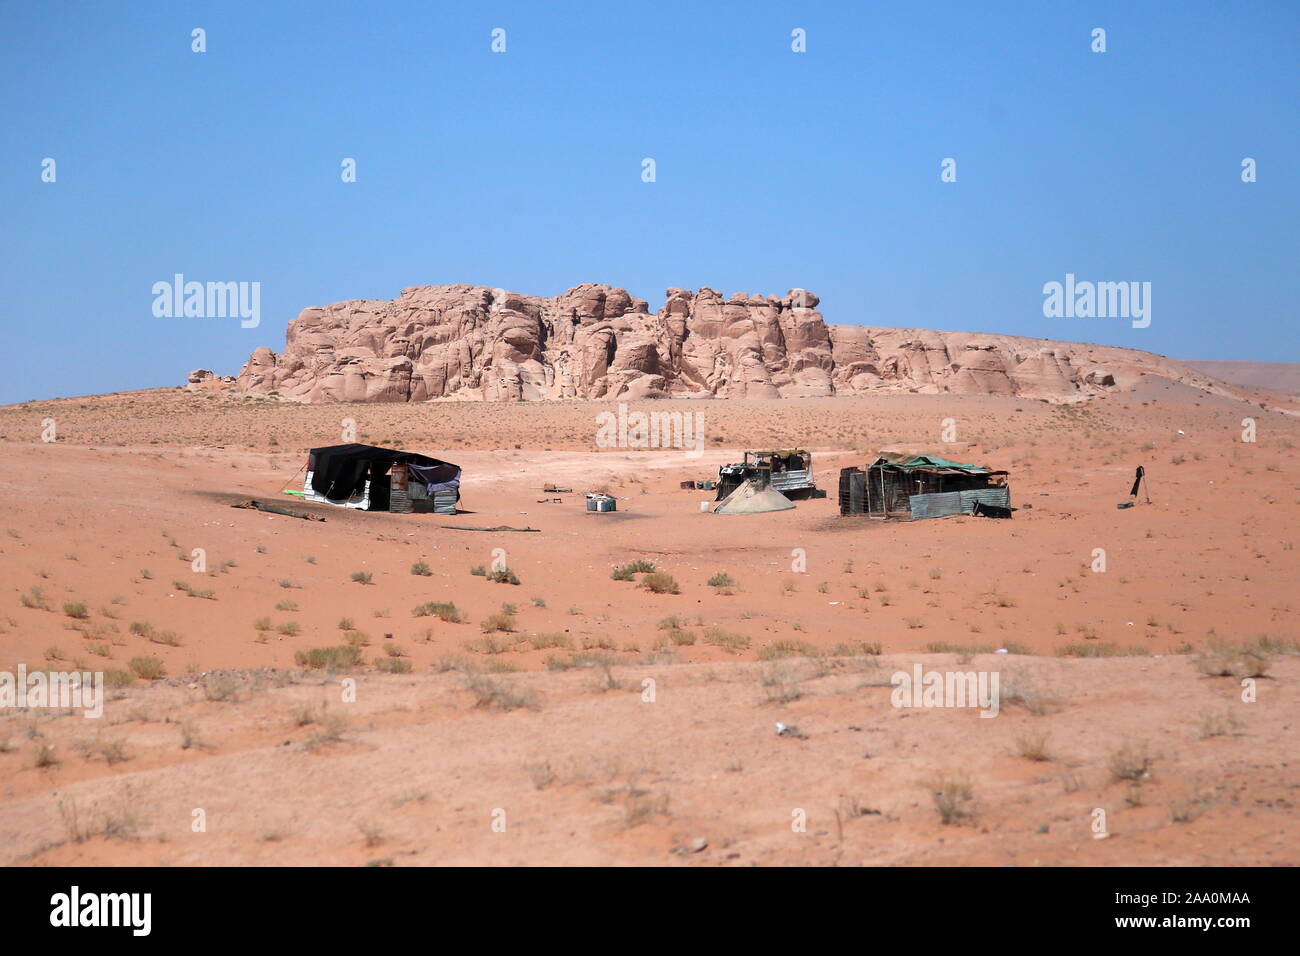 Bedouin camp, Desert Highway, Jordan, Middle East Stock Photo